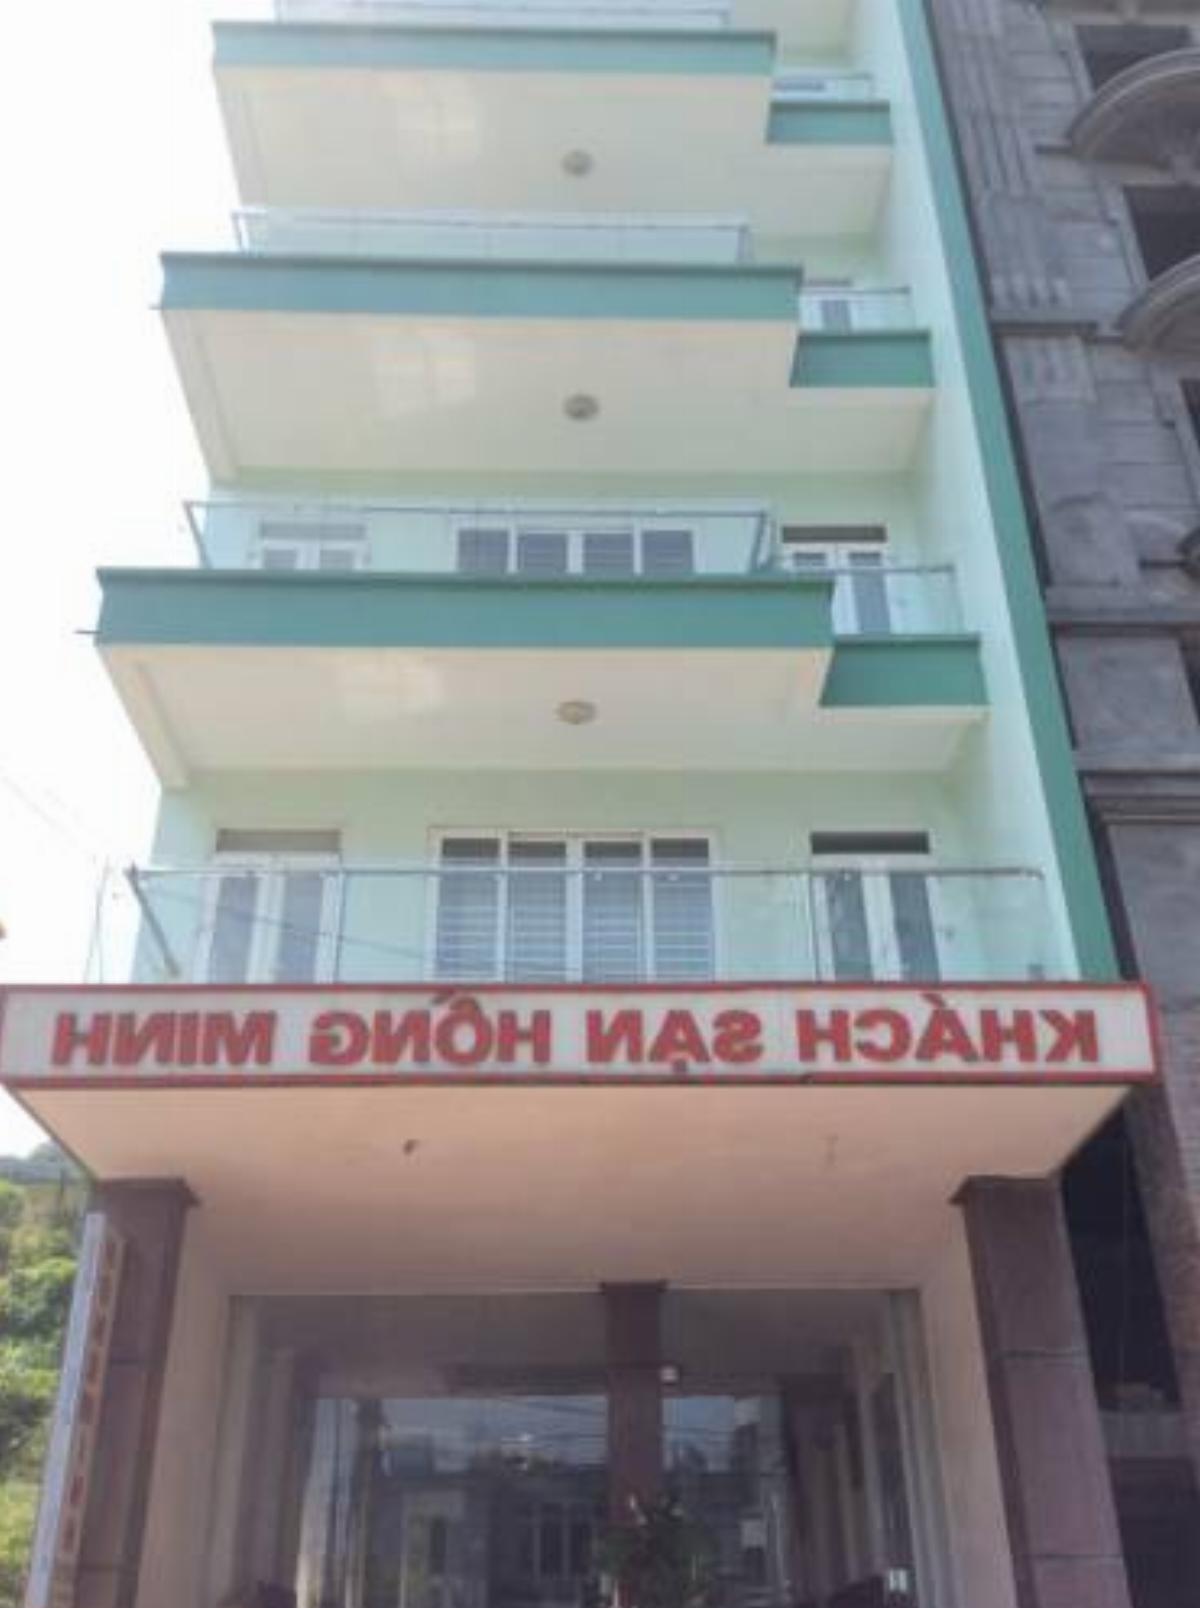 Hong Minh Hotel Hotel Chí Hòa Vietnam